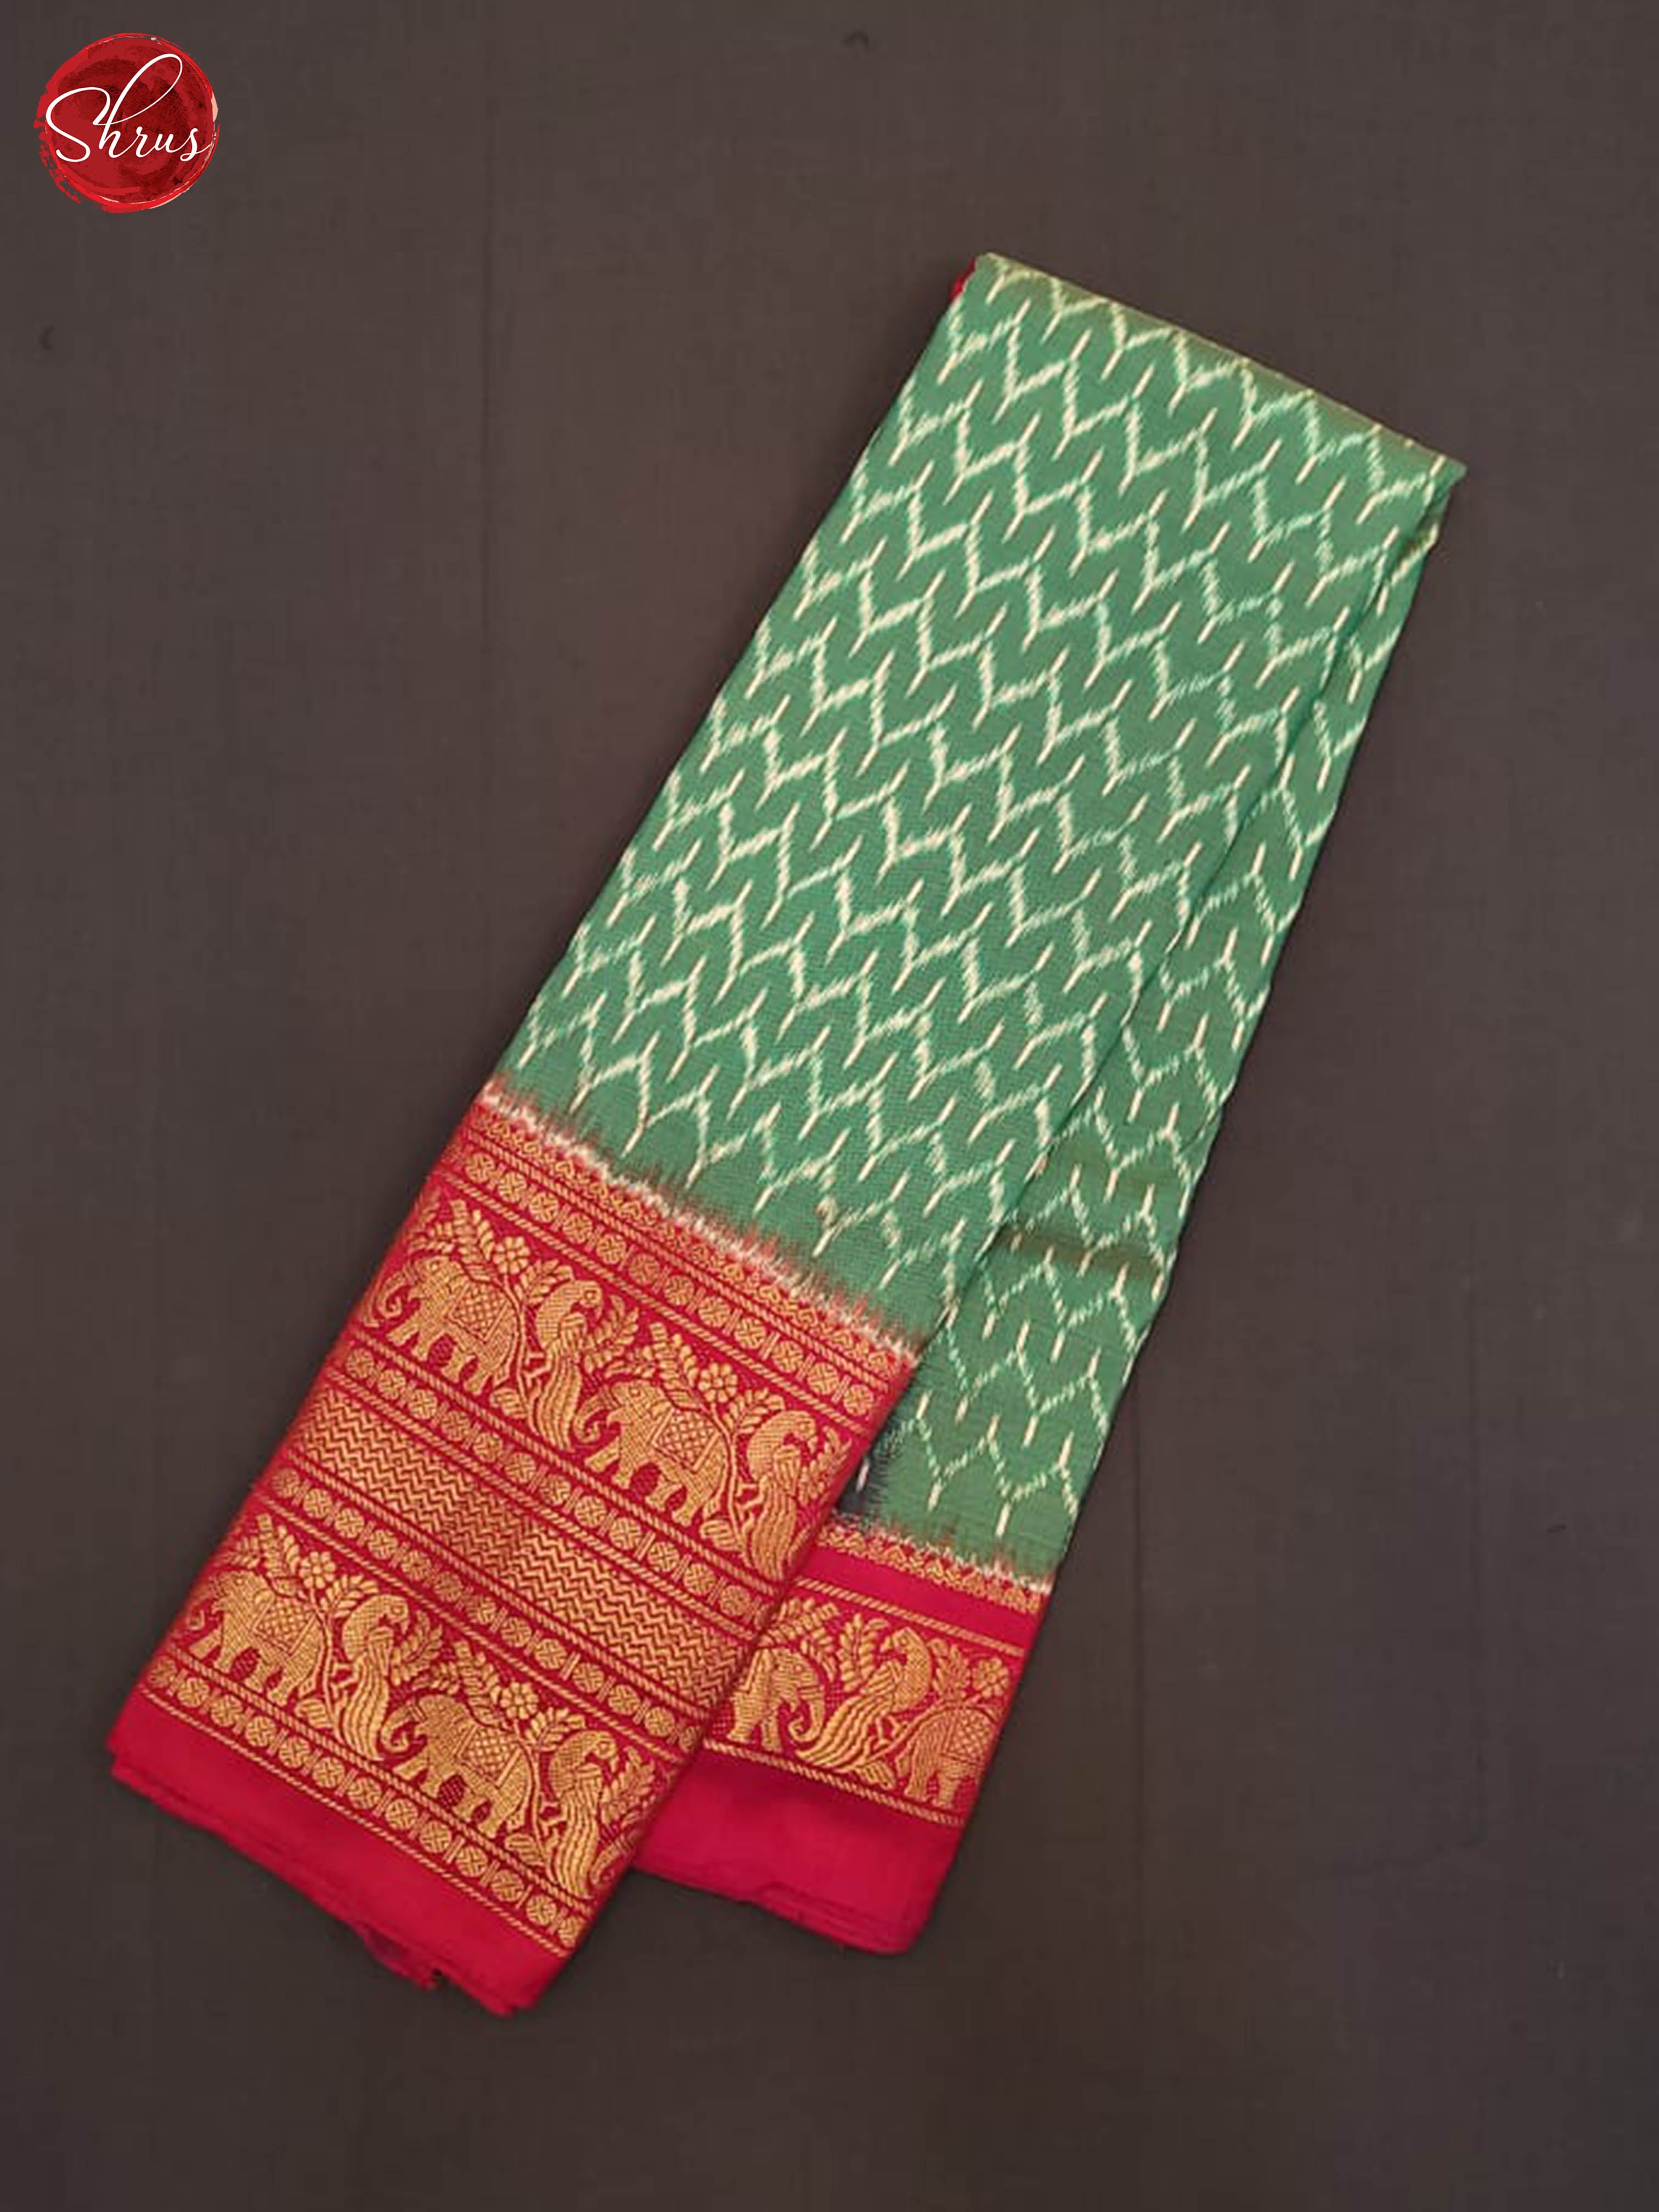 Dual tone green and pink -Ikkat Silk Saree - Shop on ShrusEternity.com